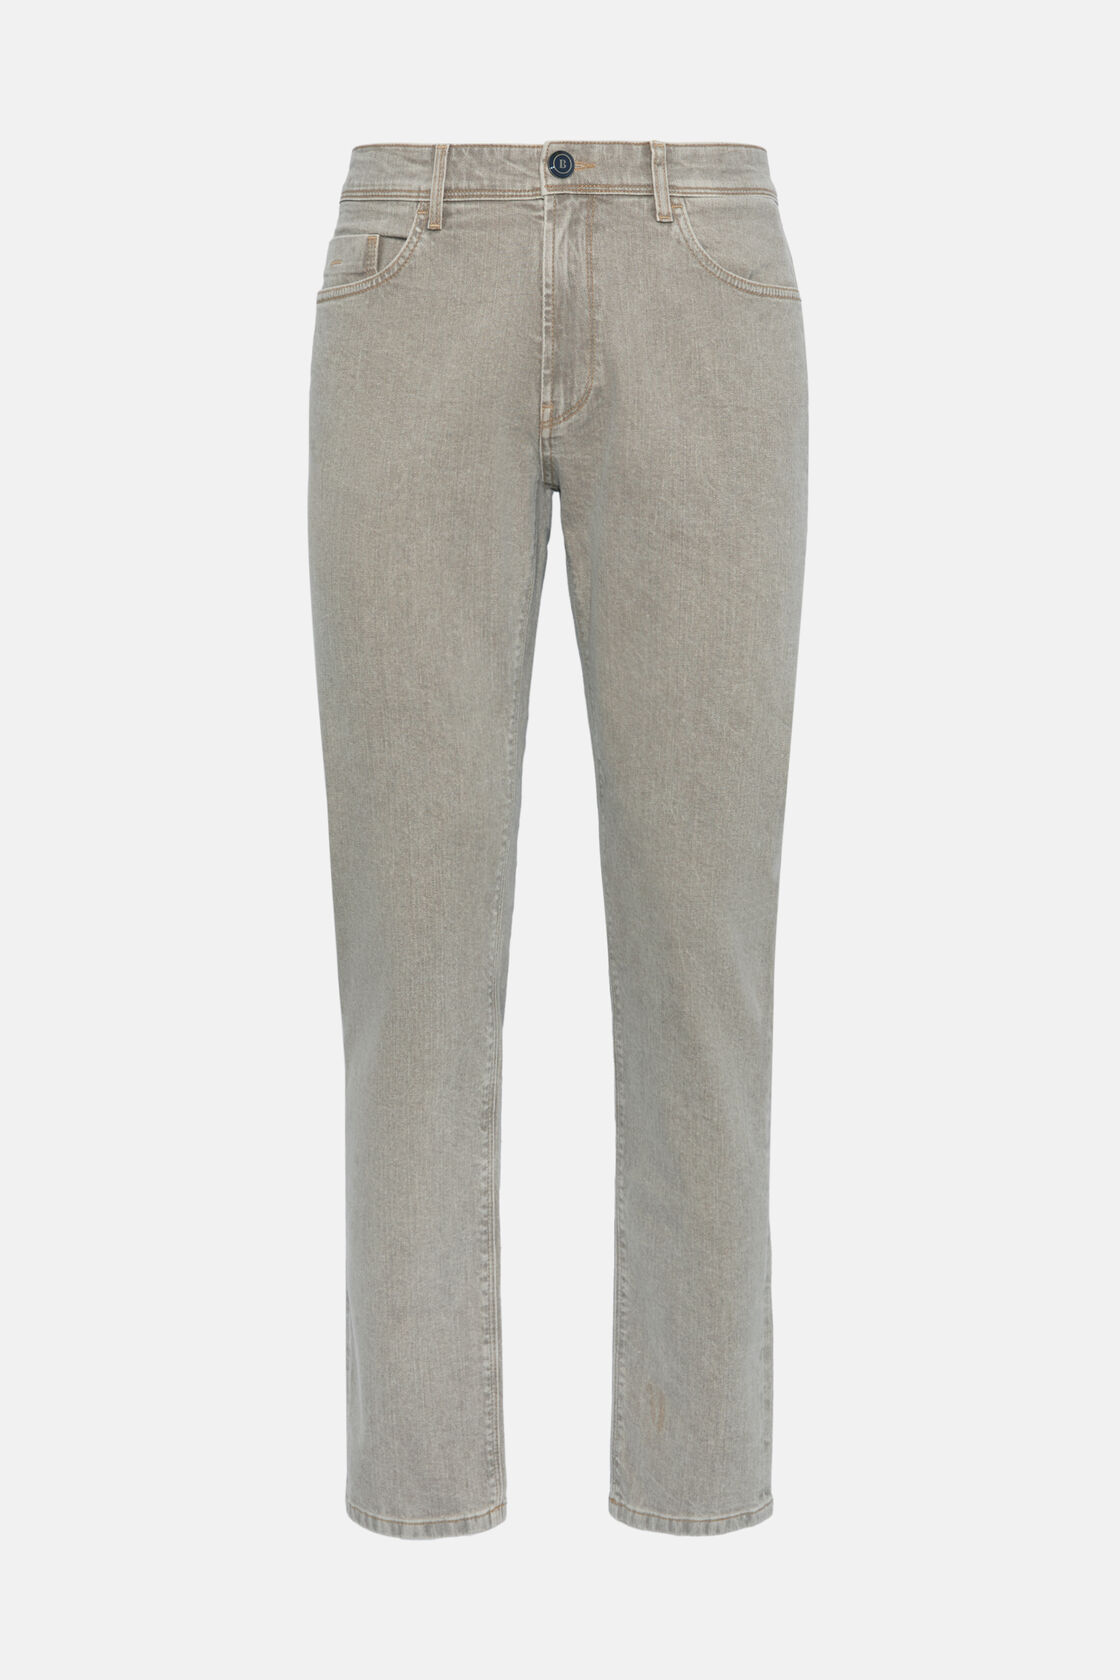 Szare jeansy elastyczne, Taupe, hi-res